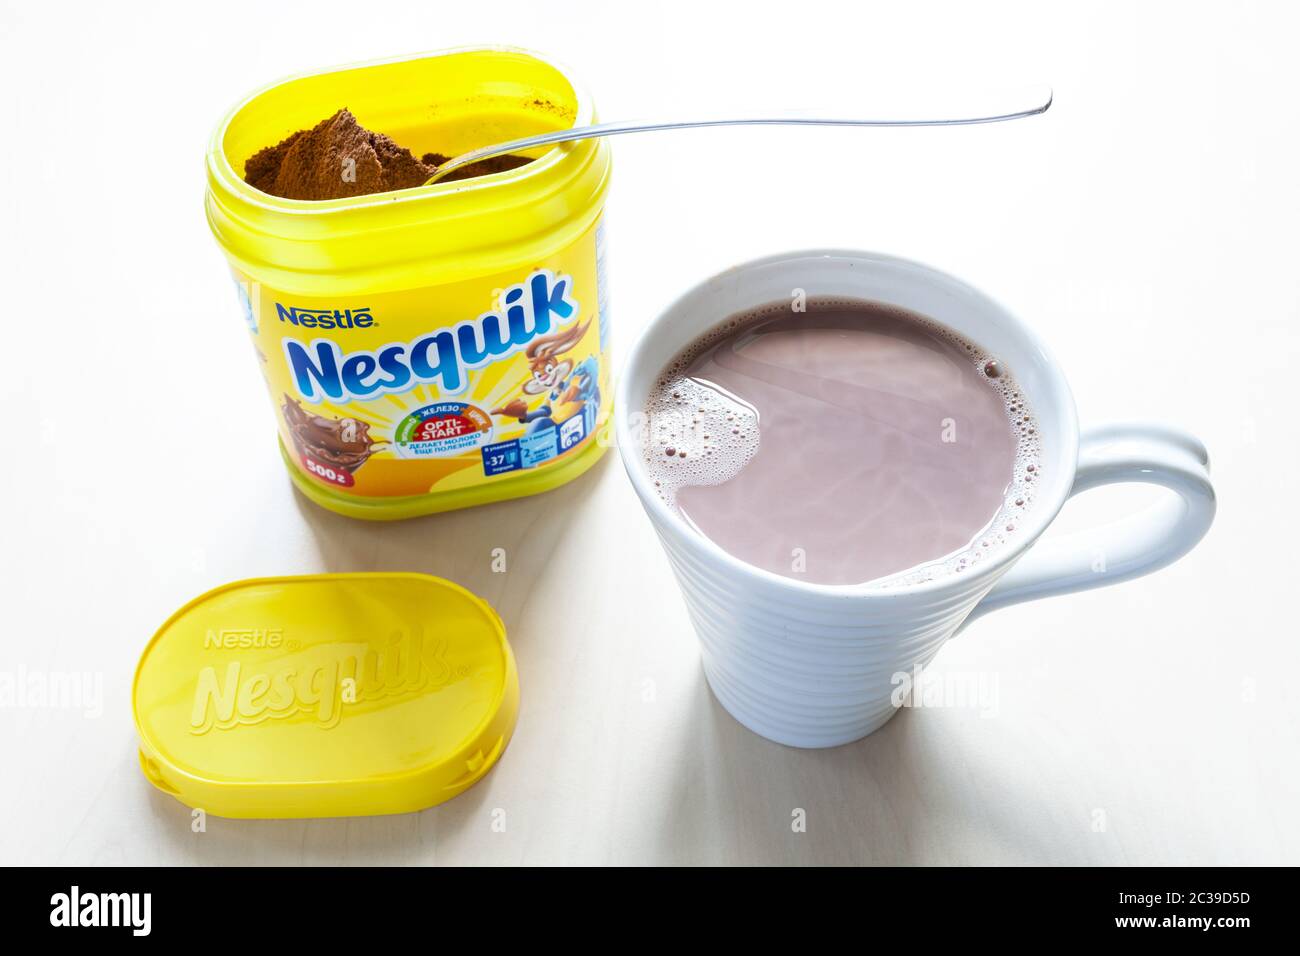 MOSKAU, RUSSLAND - 16. JUNI 2020: Oben Ansicht von offenem Glas von Nesquik mit Löffel und mup mit Kakao auf dem Tisch. Nesquik Schokoladenpulver wurde in 1 eingeführt Stockfoto